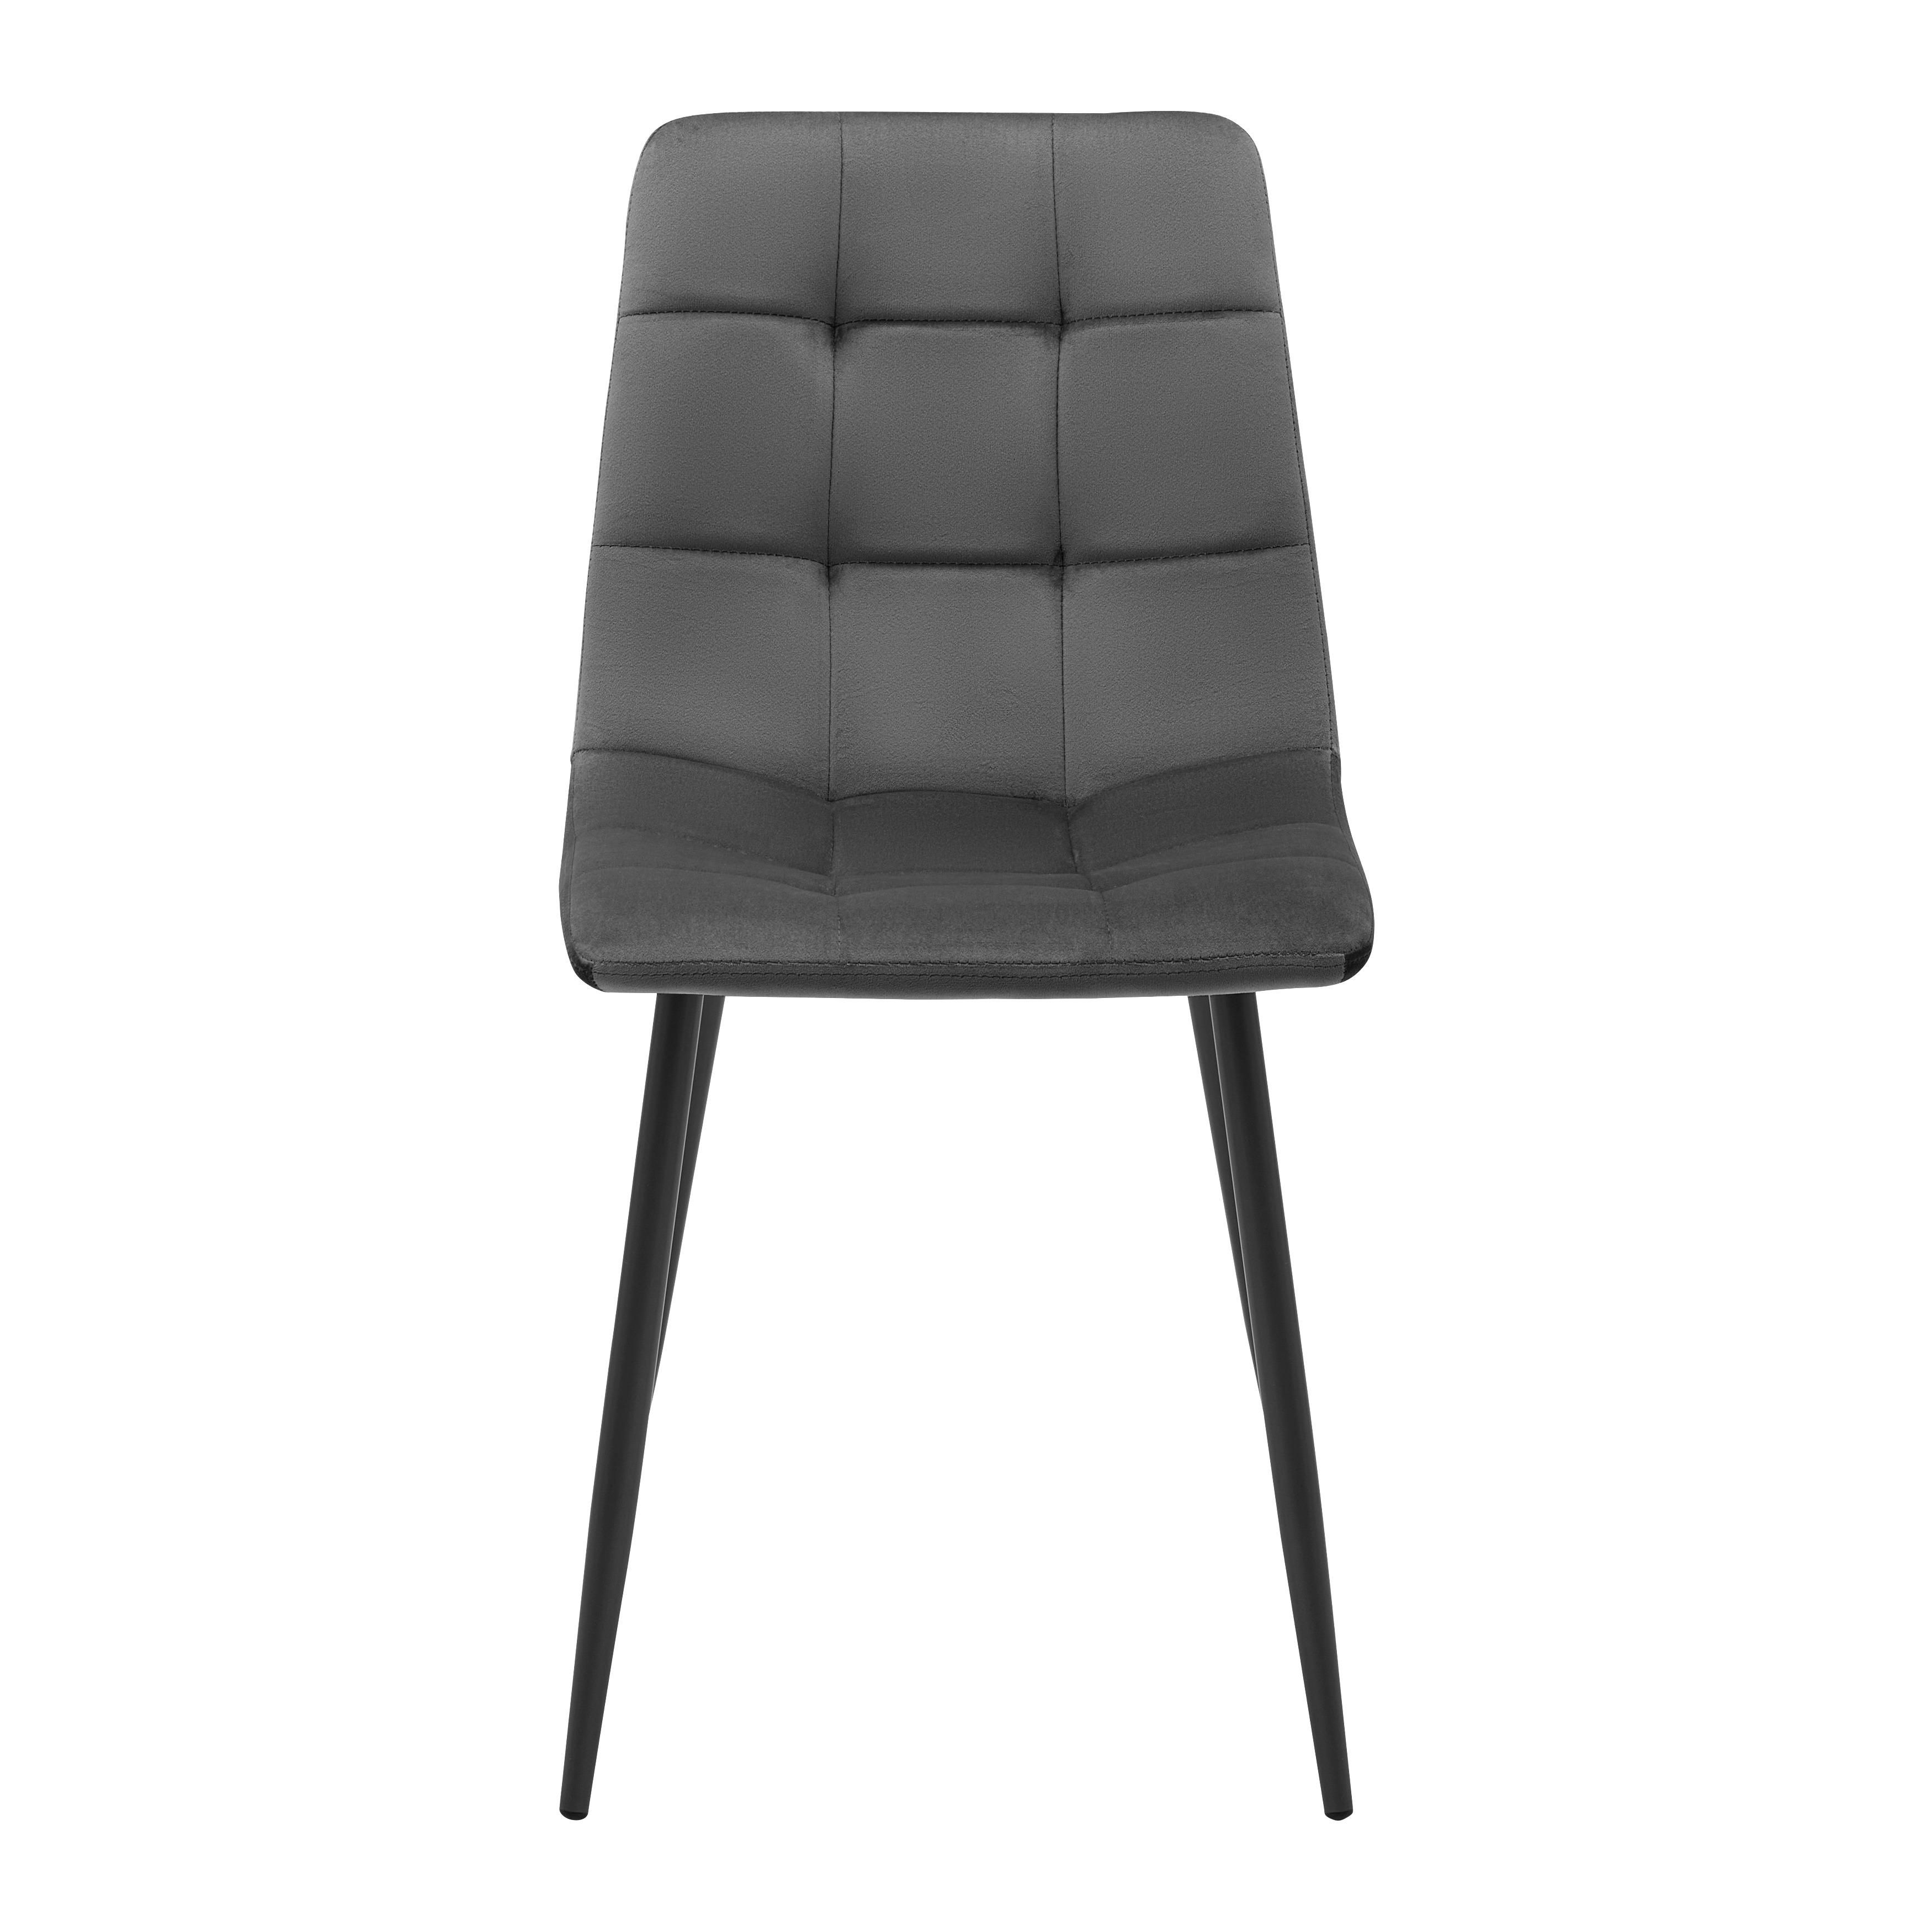 Jídelní Židle Ria Hnědá - černá/hnědá, Moderní, kov/textil (43,5/87/54cm) - P & B